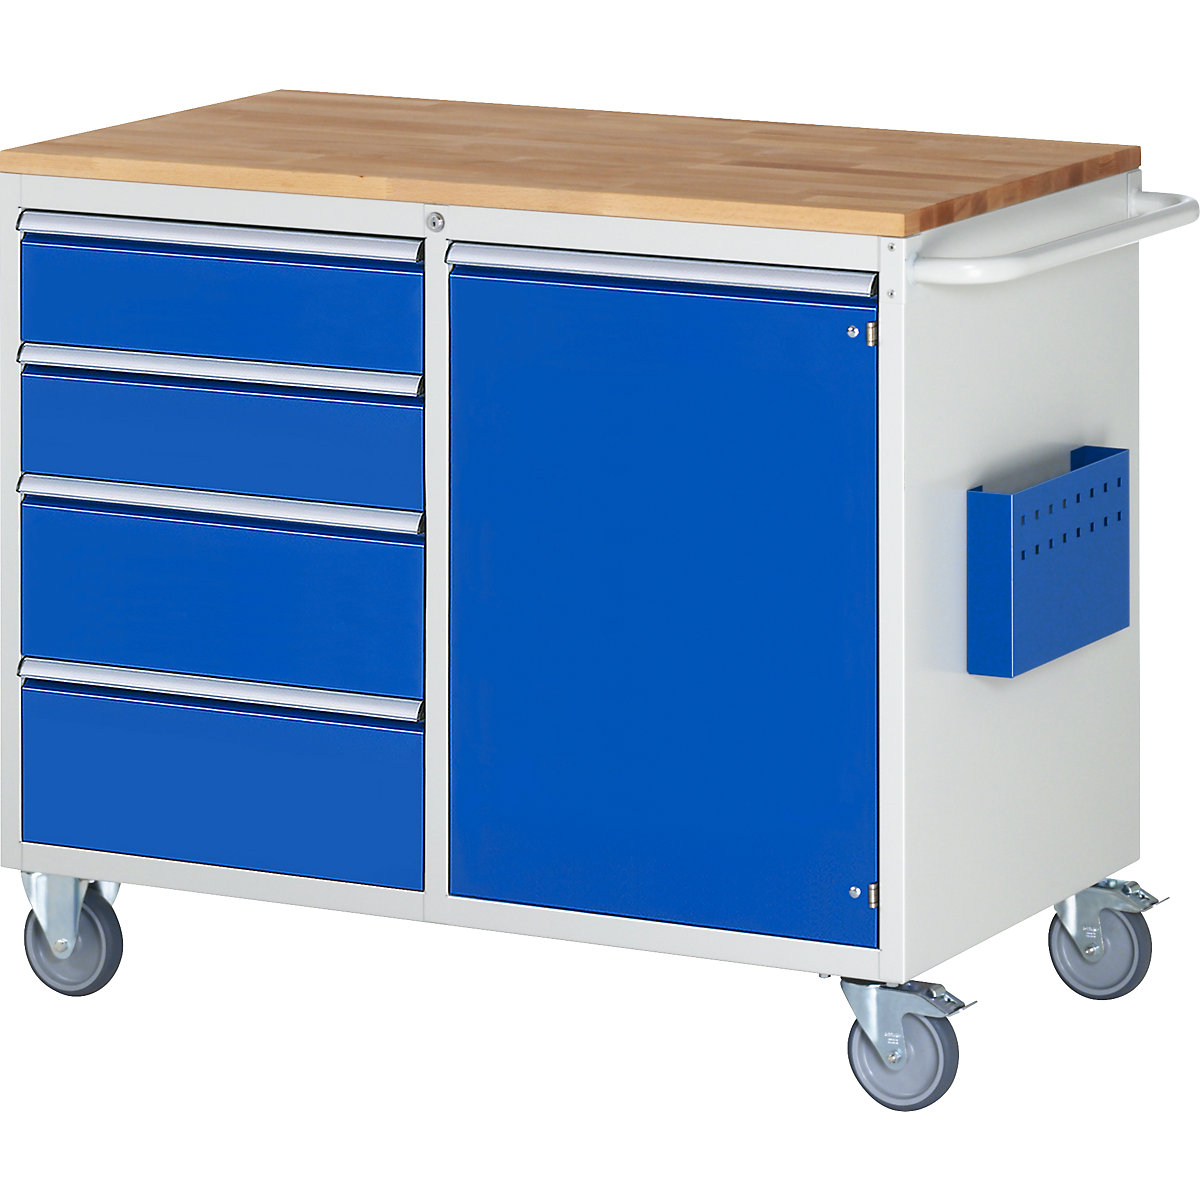 Banchi da lavoro compatti, con rotelle – RAU, 4 cassetti, 1 anta, piano di lavoro in legno, grigio chiaro / blu genziana-2